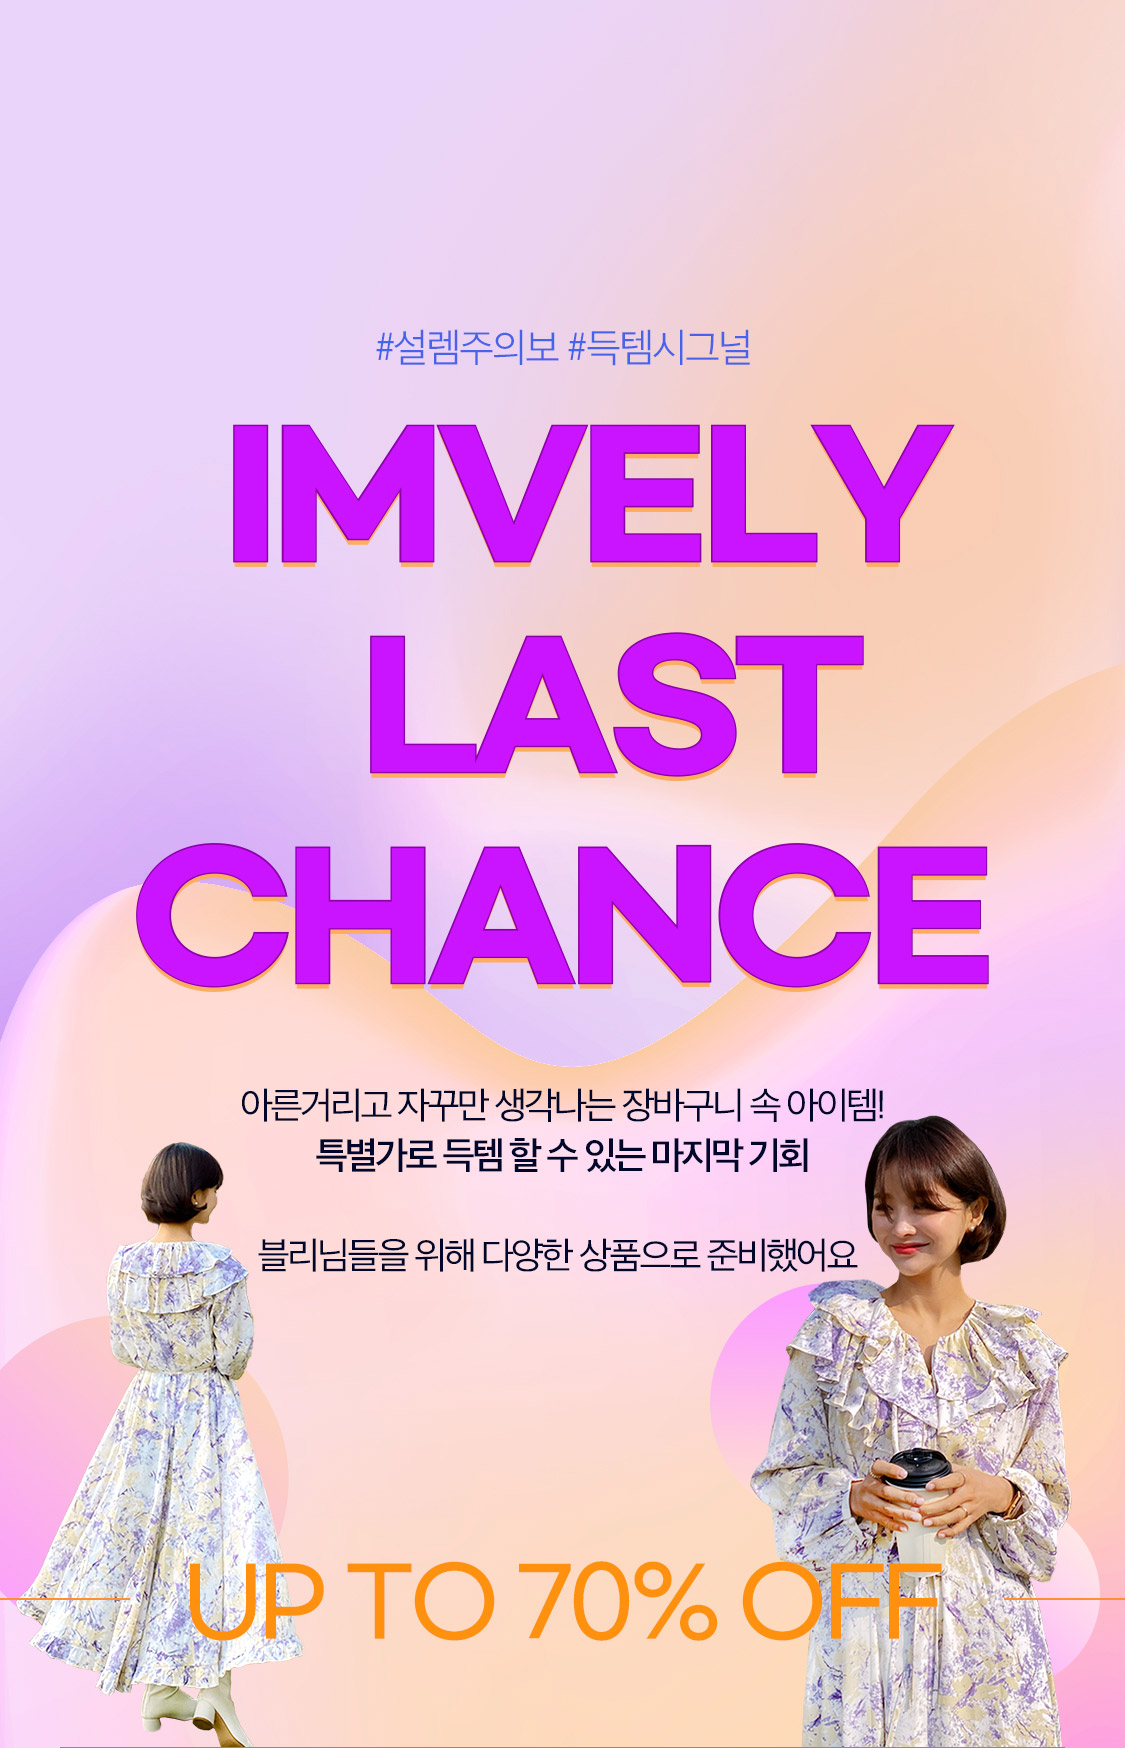 last chance